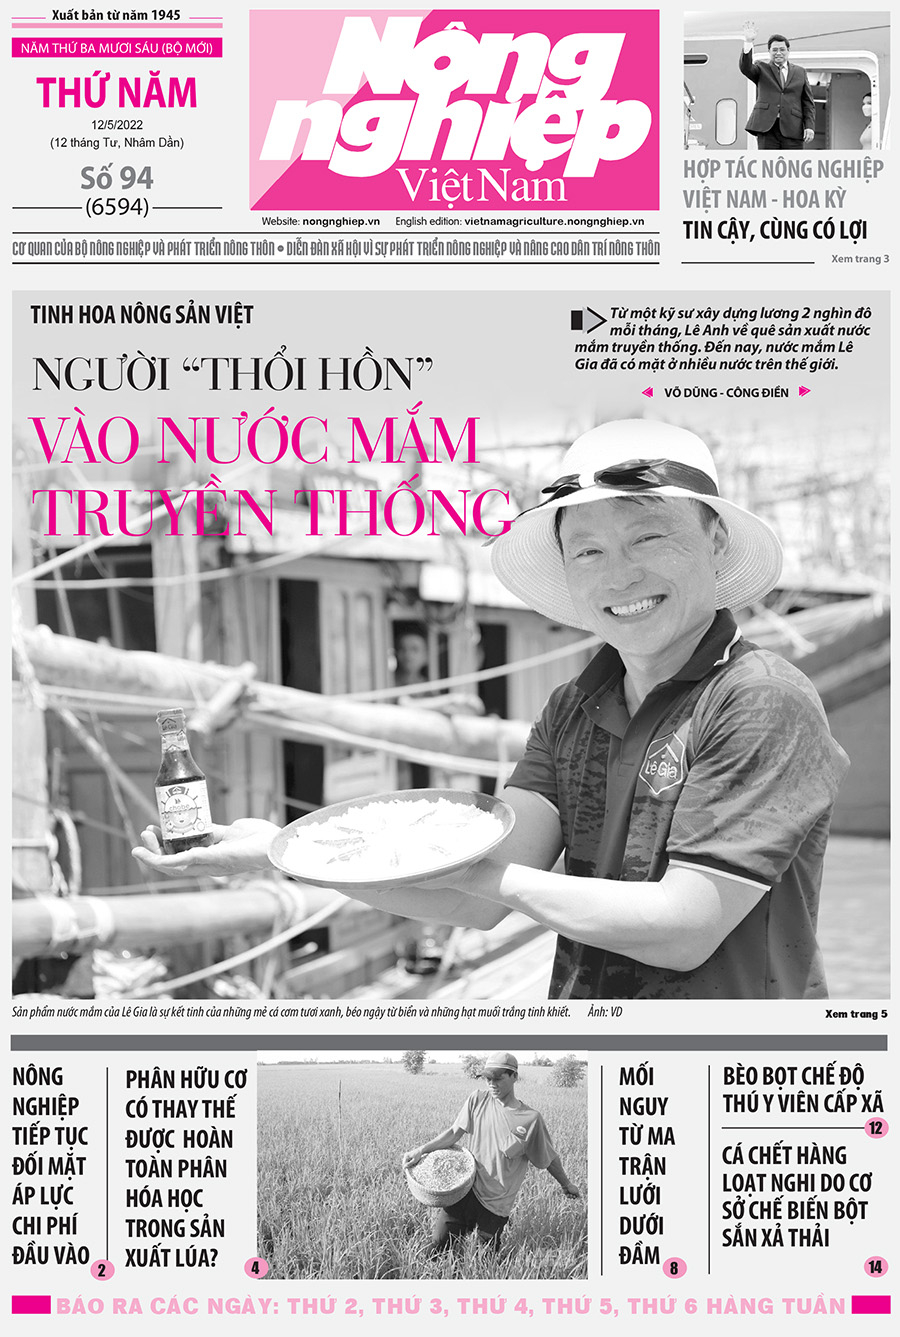 Tổng hợp tin tức báo giấy trên Báo Nông nghiệp Việt Nam số 94 ra ngày 12/5/2022